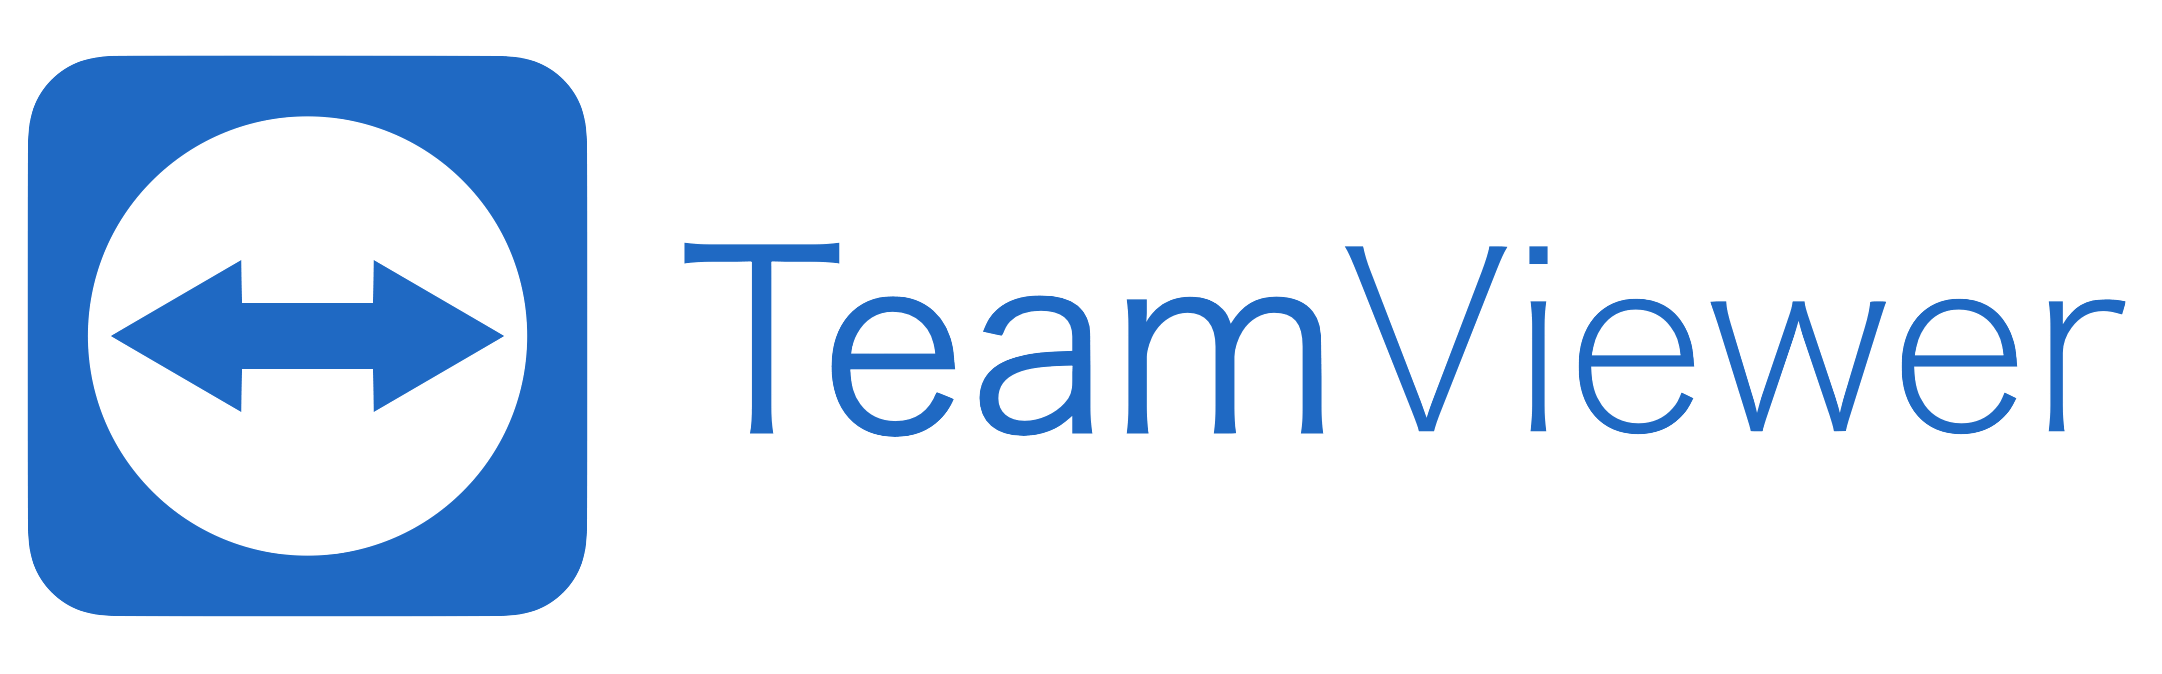 teamviewer qs windows